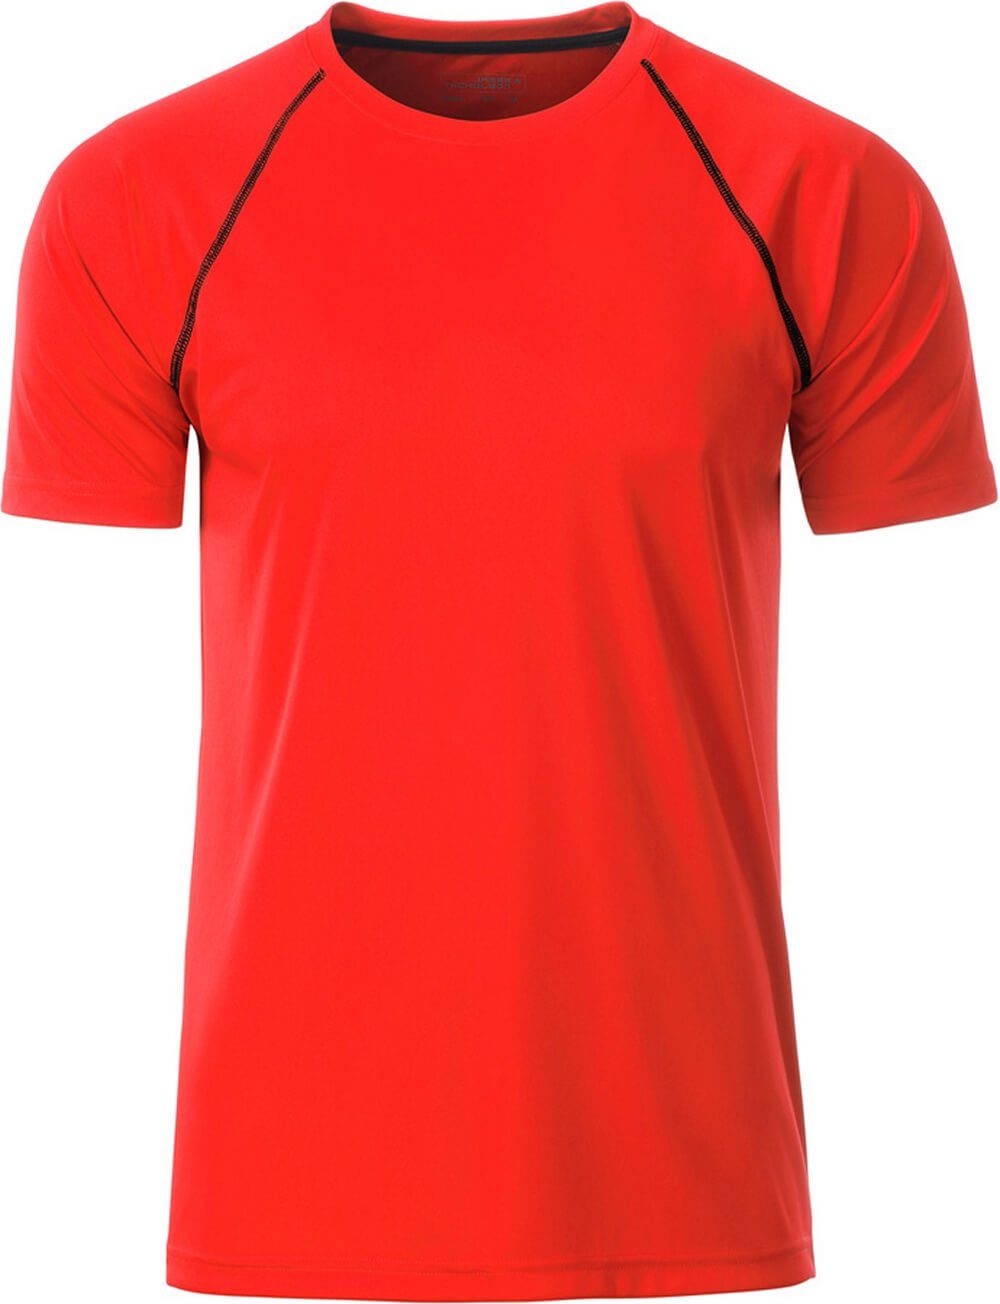 Herren 496 Funktions-Shirt James Nicholson JN trocknend Funktionsshirt orange/black bright & Nicholson schnell James &